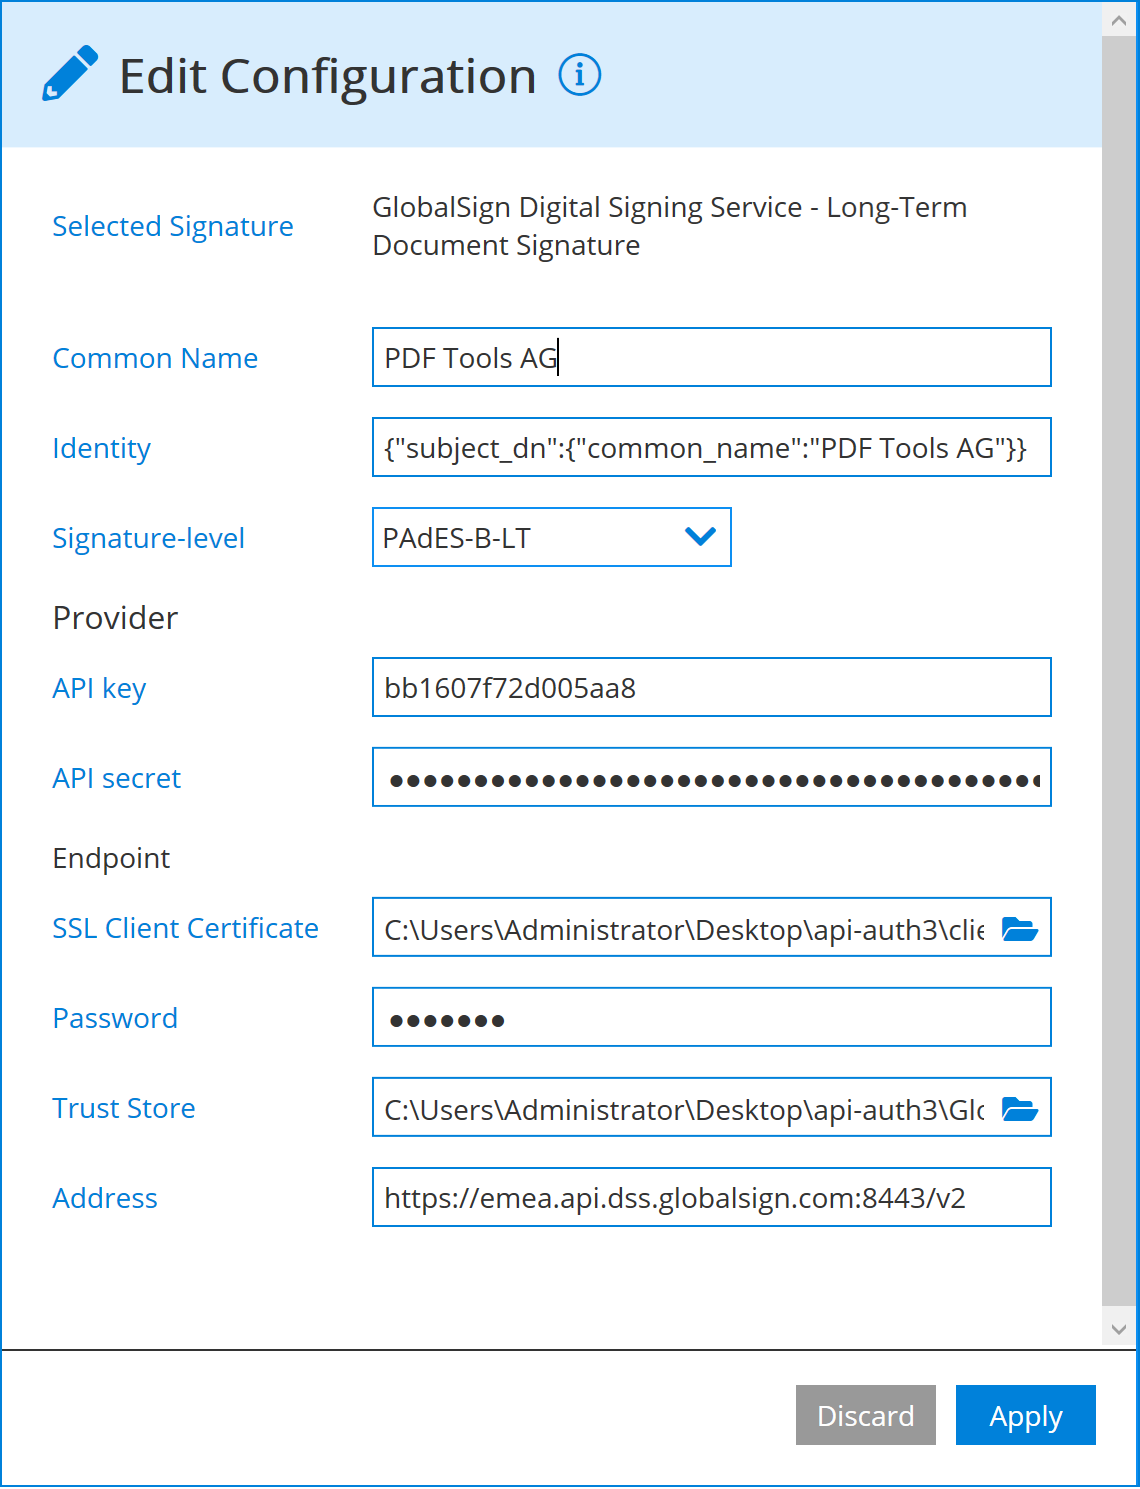 GlobalSign signature configuration of PaDES-B-LT/LTA